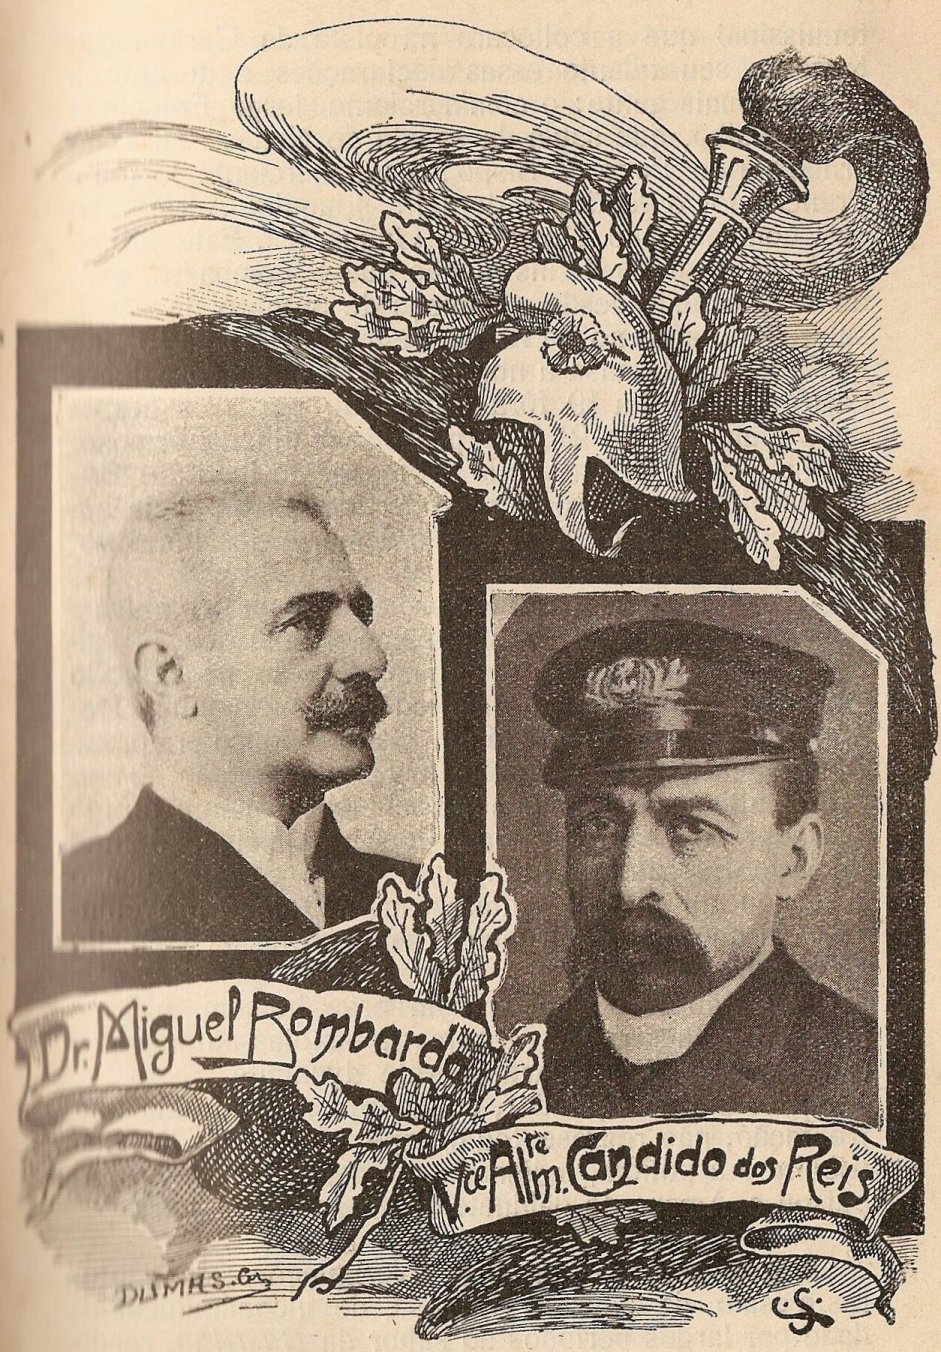 Dr. Miguel Bombarda e Vice Almirante Candido dos Reis